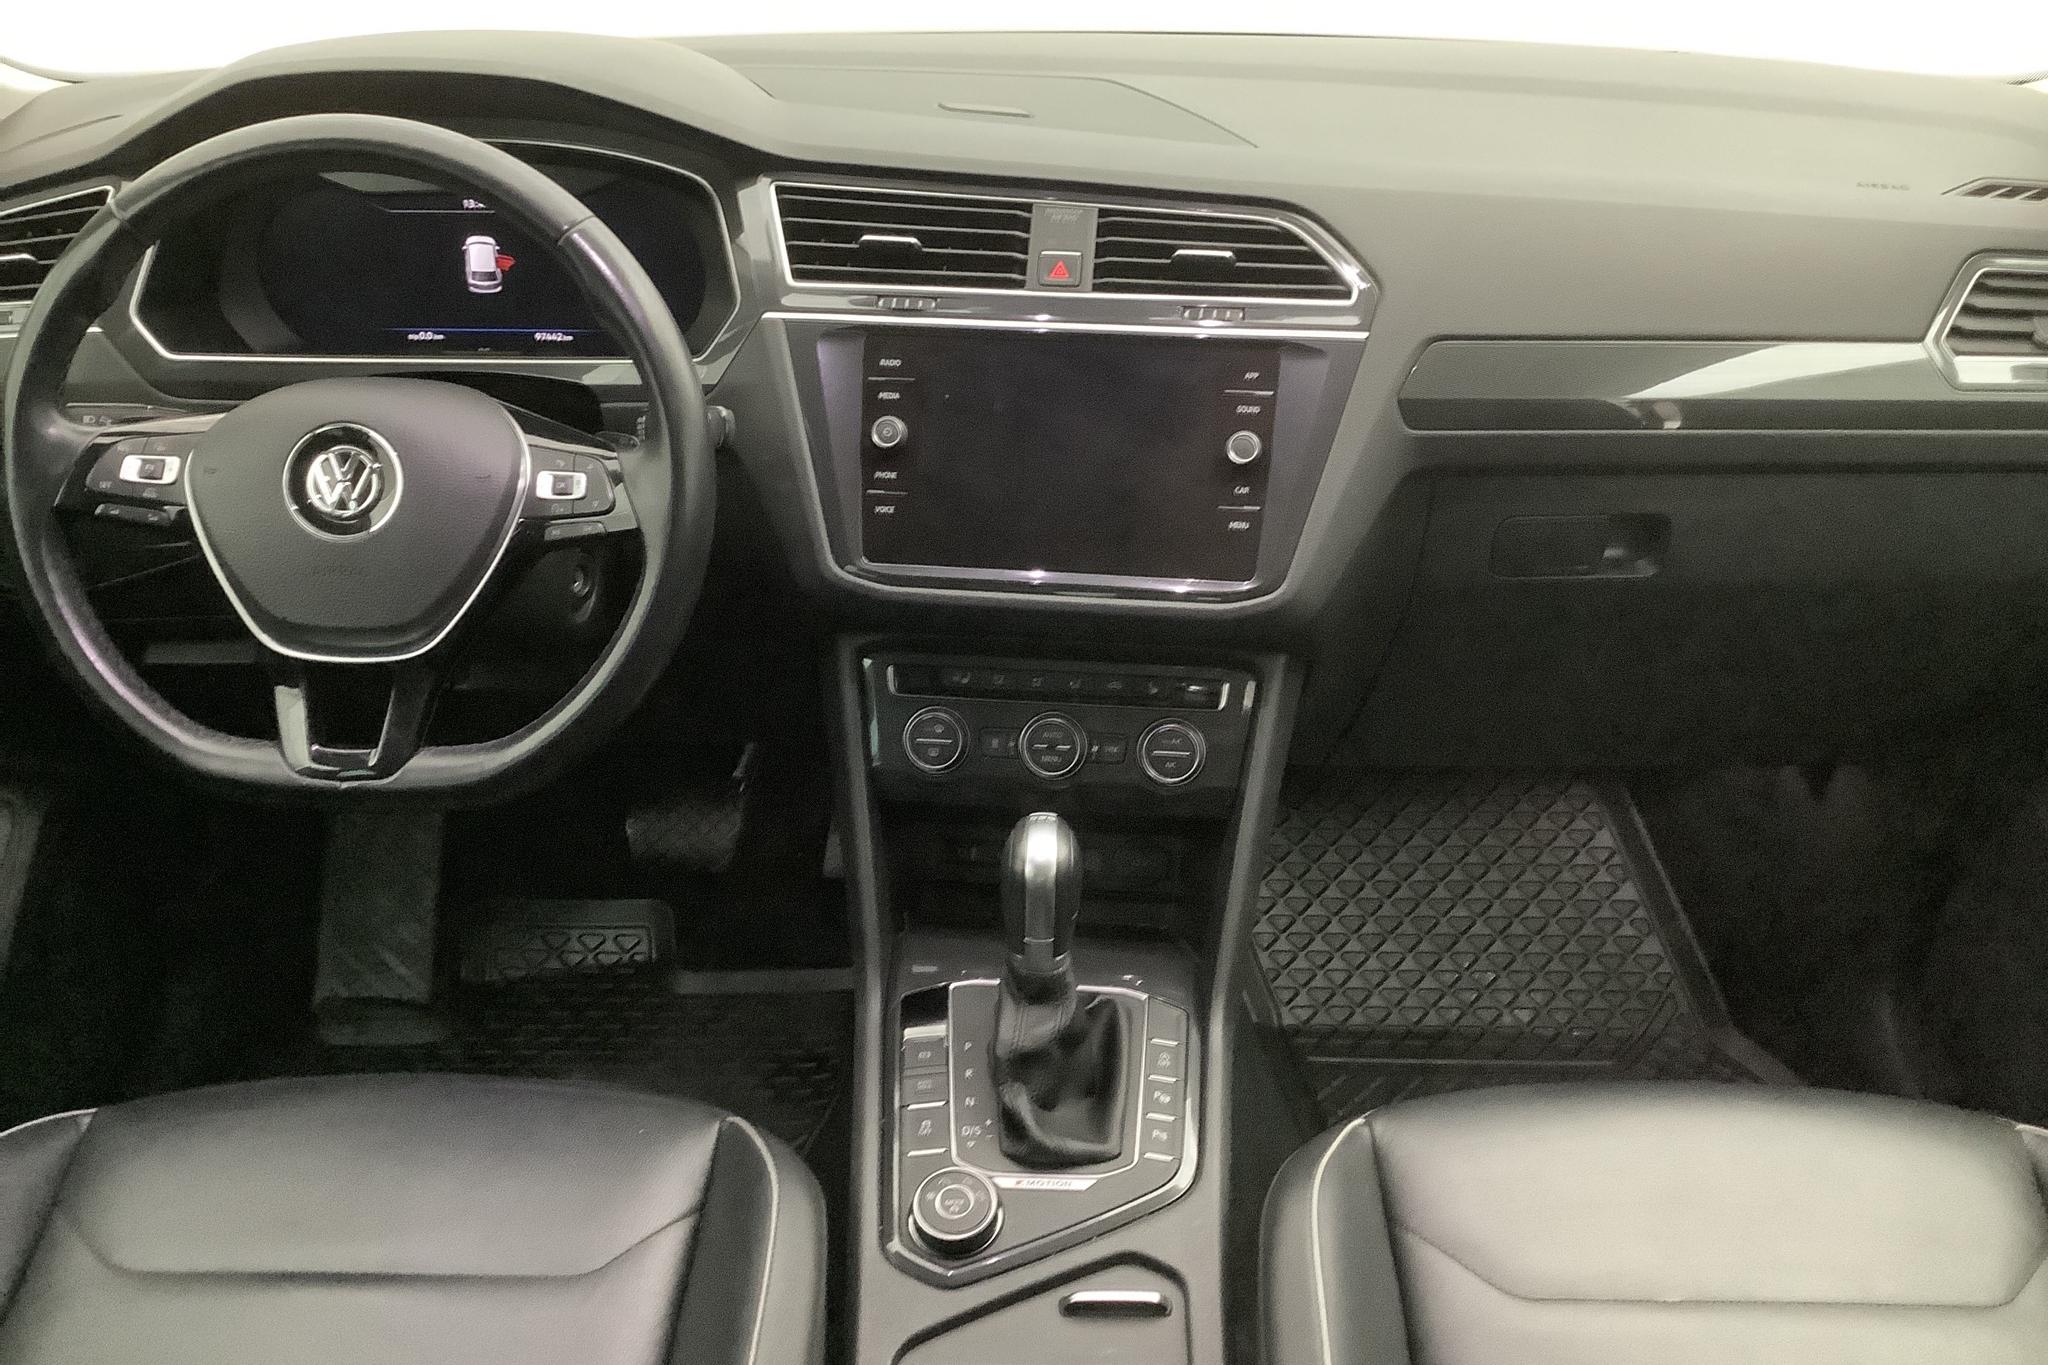 VW Tiguan 2.0 TDI 4MOTION (190hk) - 9 745 mil - Automat - silver - 2018